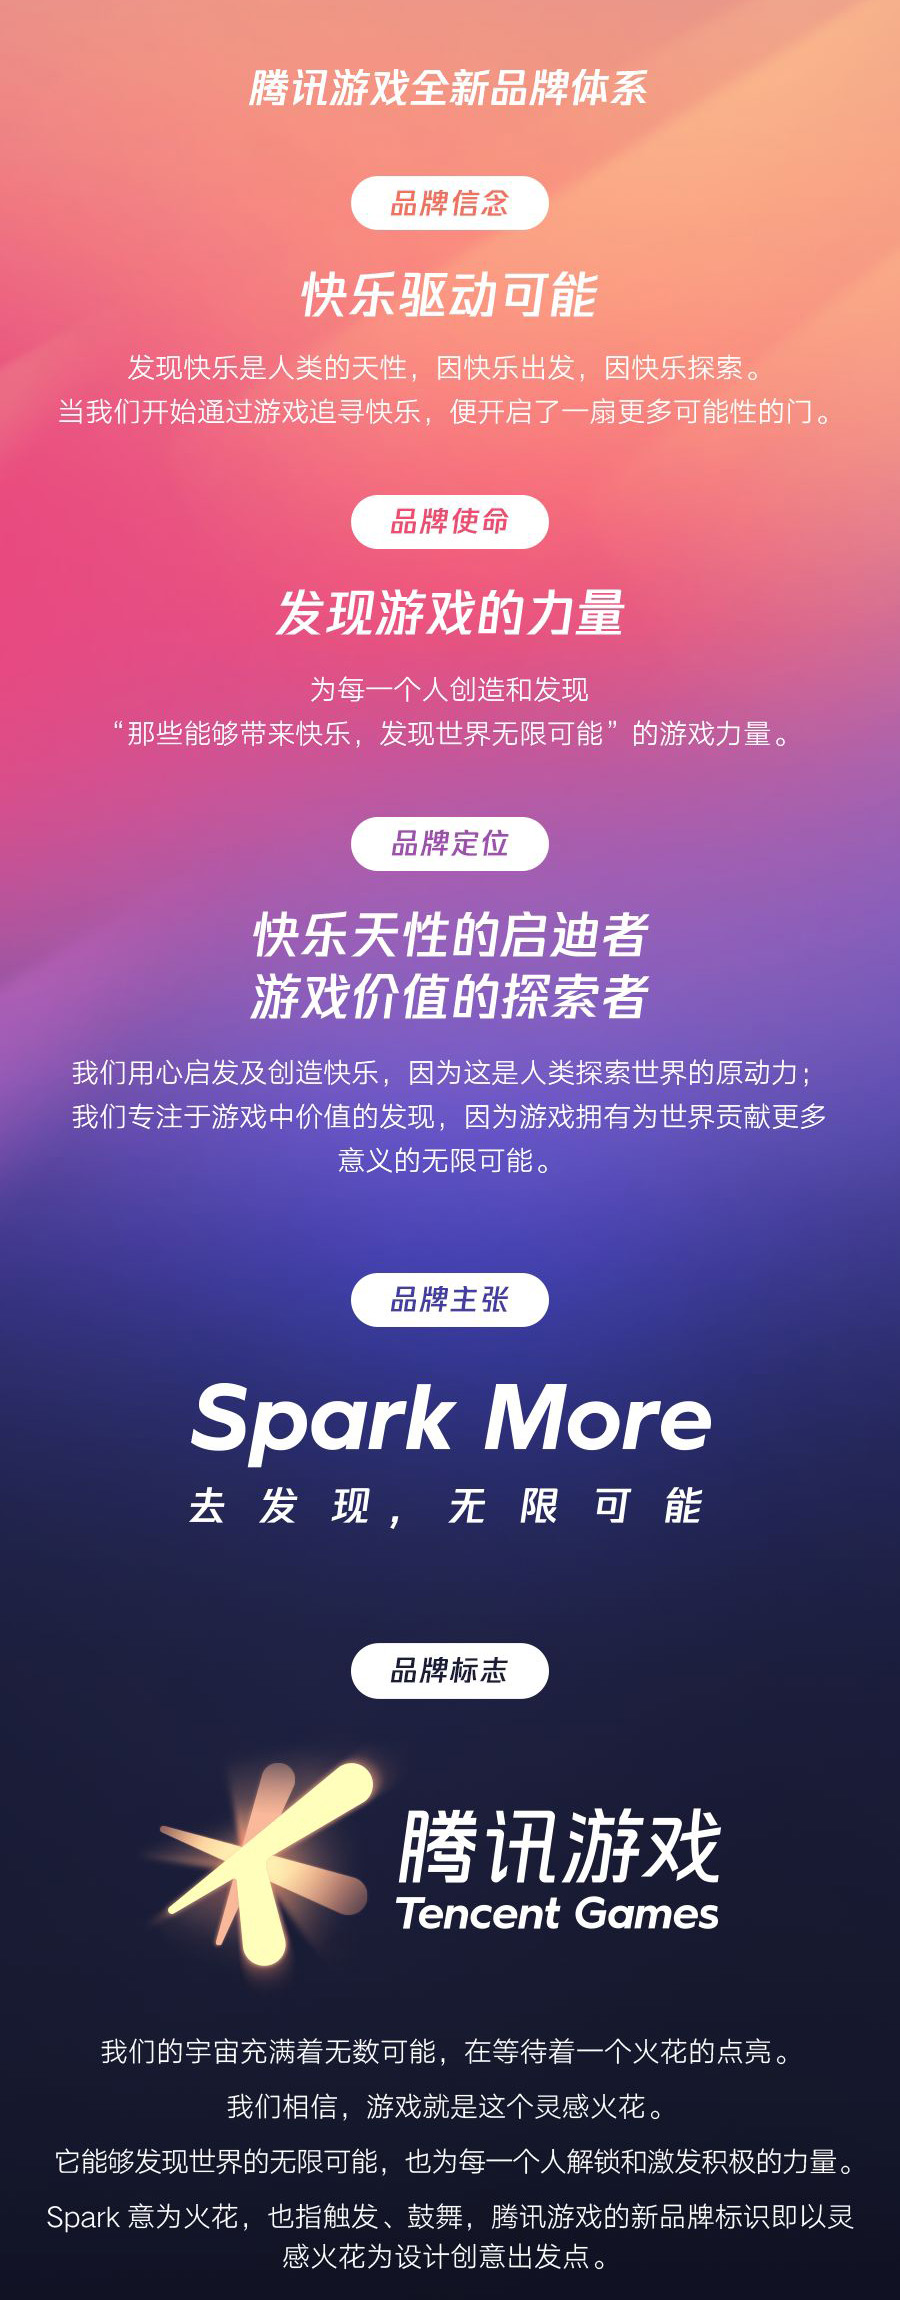 腾讯游戏品牌升级：Spark More！去发现，无限可能